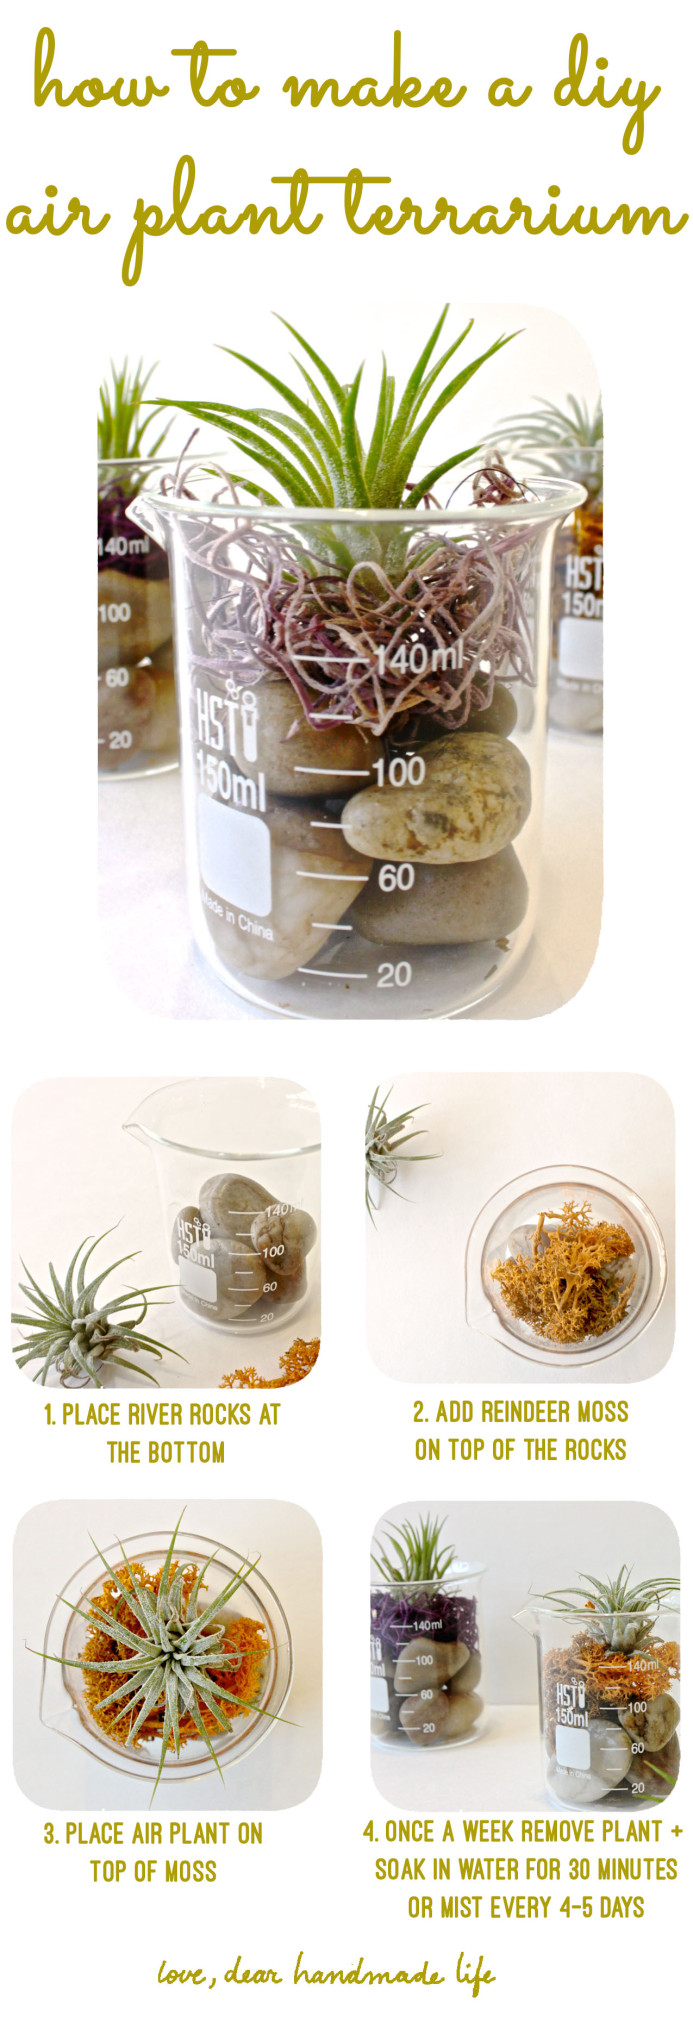 how-to-make-a-diy-air-plant-terrarium